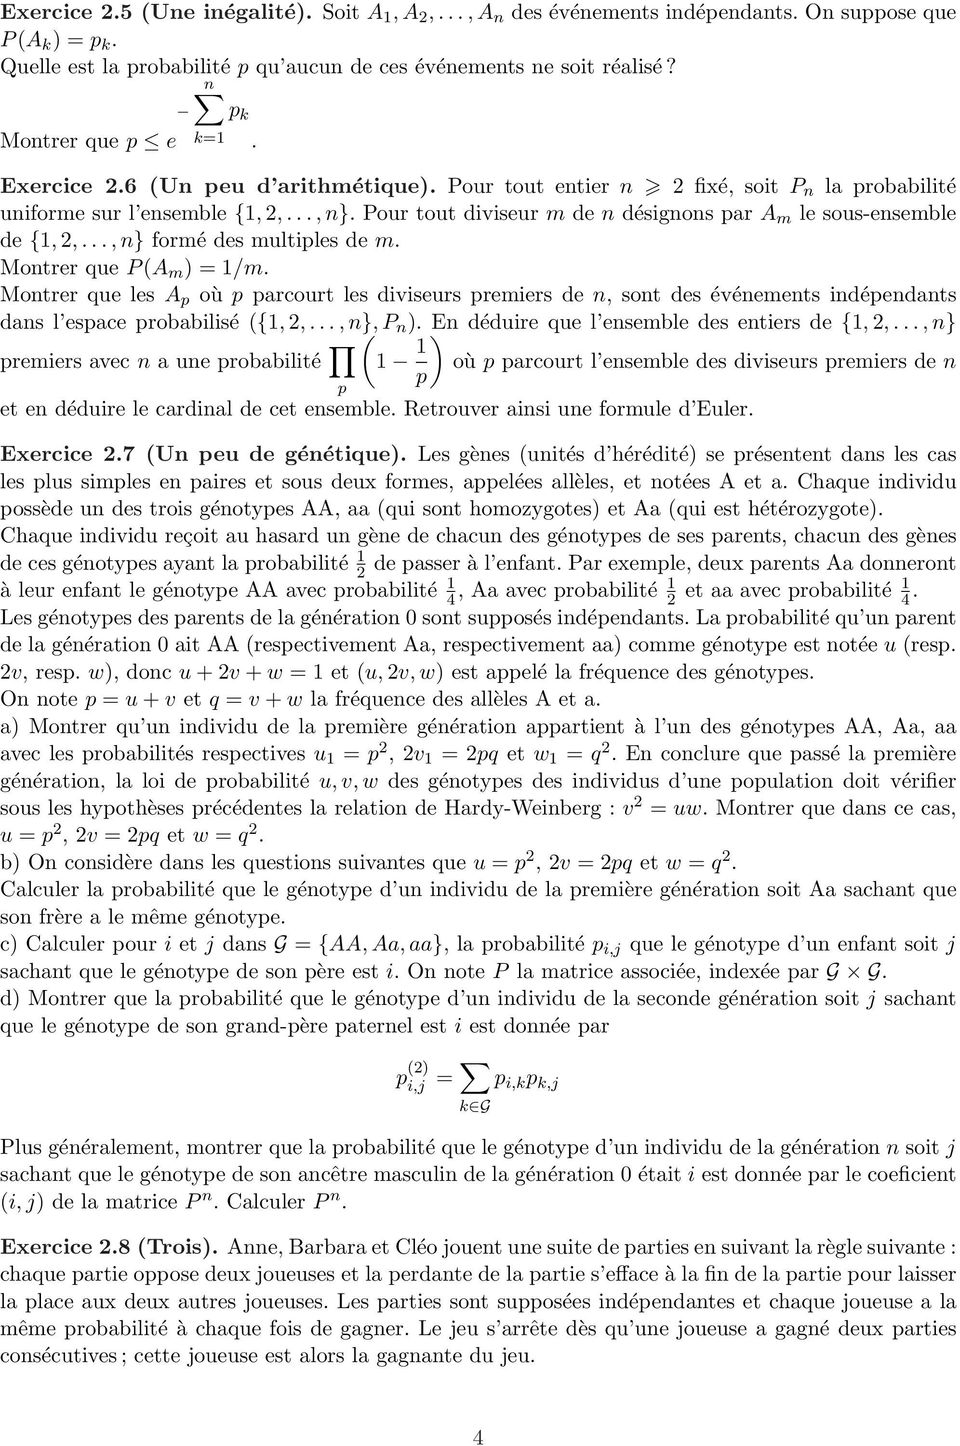 Pour tout diviseur m de n désignons par A m le sous-ensemble de {1, 2,..., n} formé des multiples de m. Montrer que P (A m ) = 1/m.